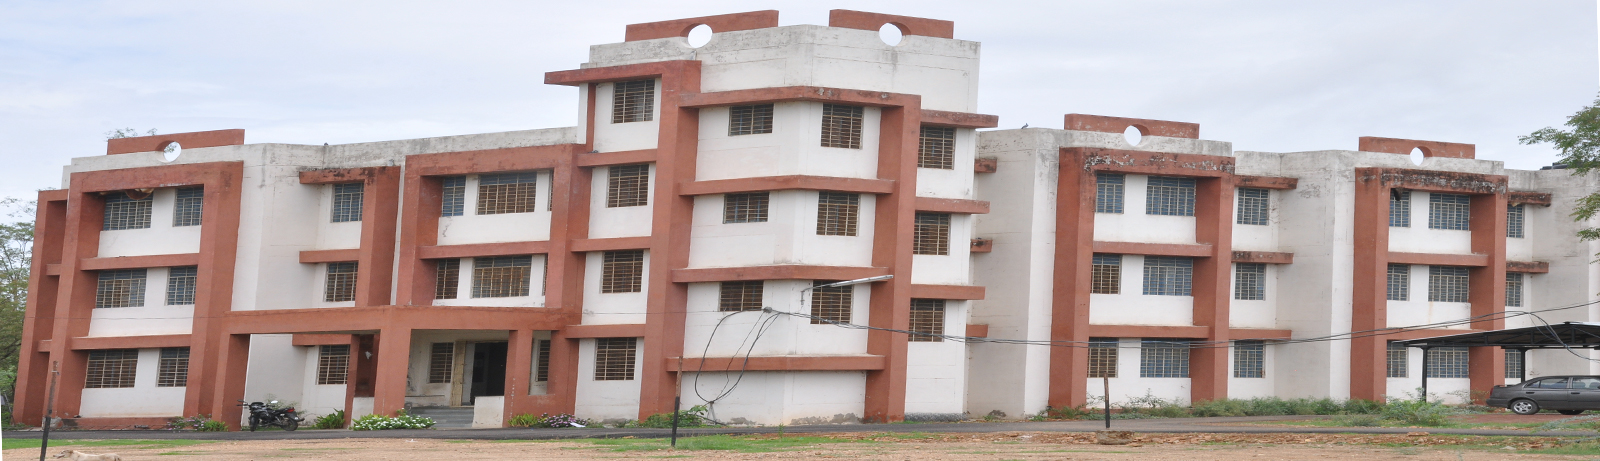 CVAS, Udaipur – College of Veterinary and Animal Sciences Udaipur